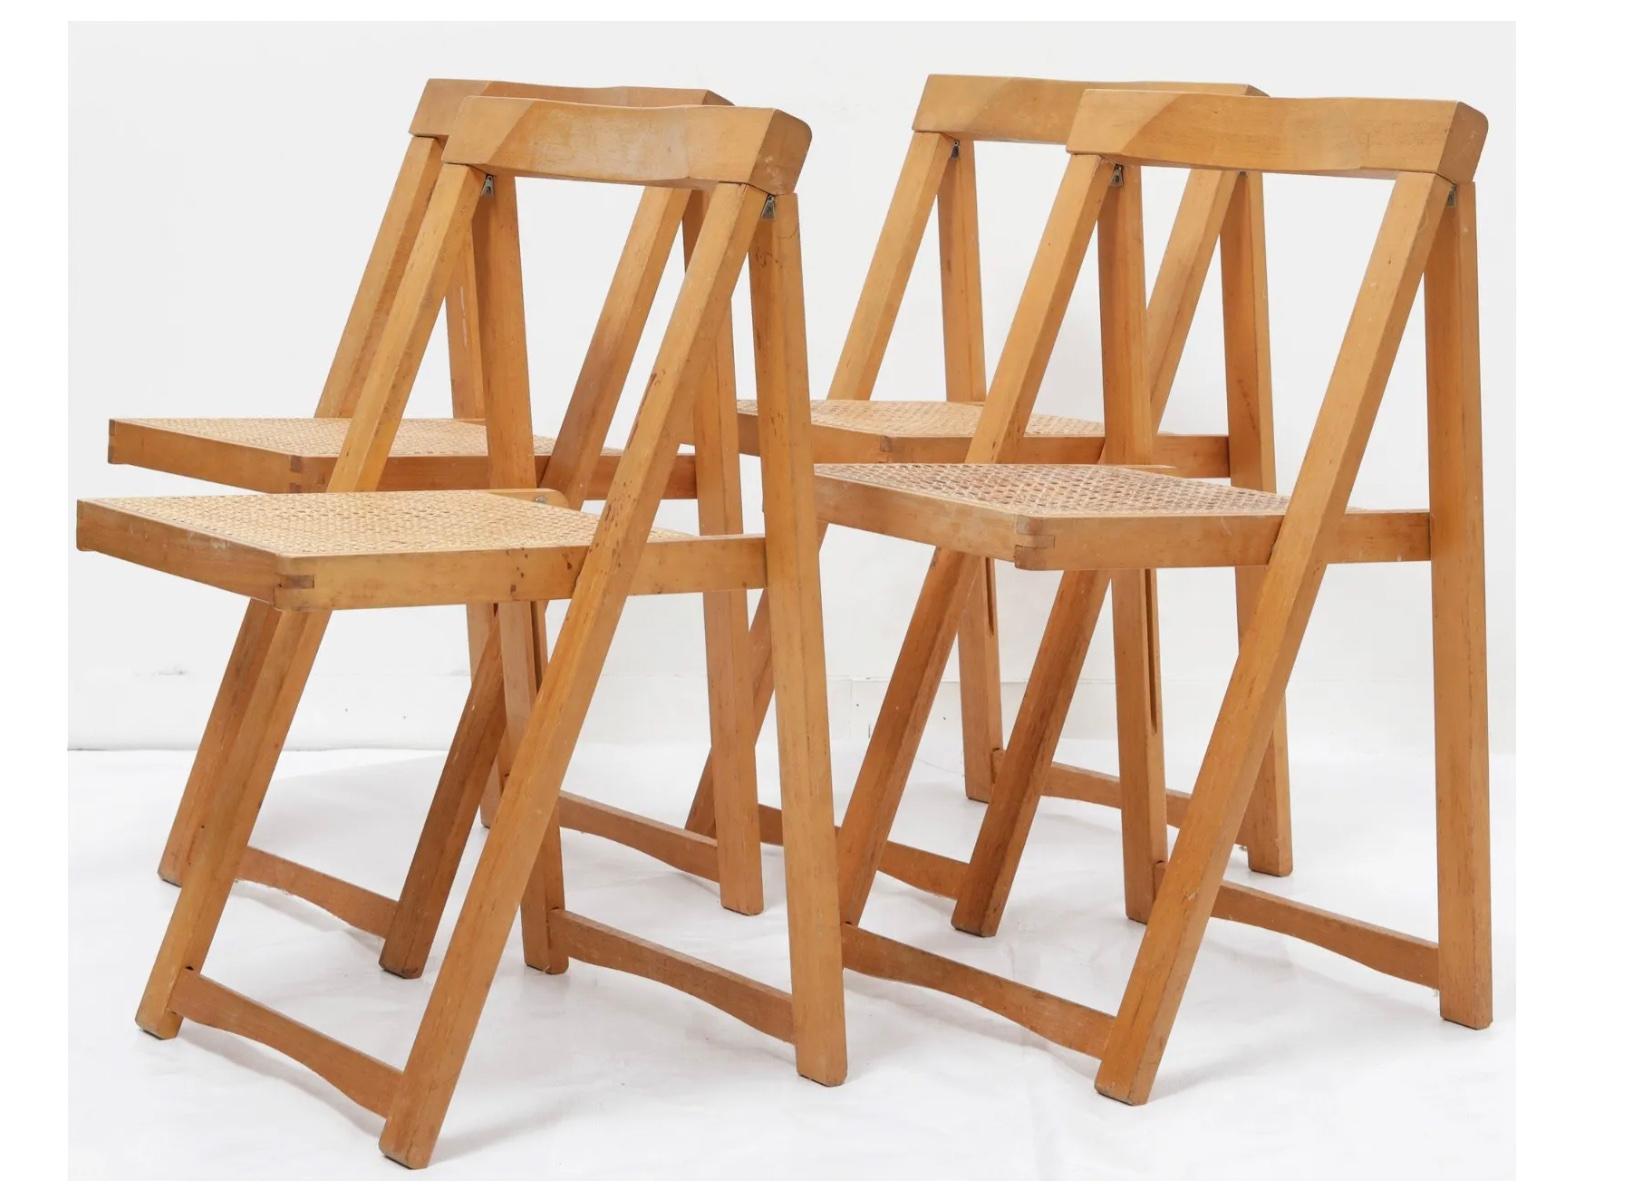 Satz von 4 Mid Jahrhundert Blonde Holz Klappstuhl mit Cane Sitz von Aldo Jacober CIRCA 1960. Sehr robust und solide. Flach stapeln, wie auf den Fotos zu sehen.

Verkauft als Satz von (4) Stühlen

